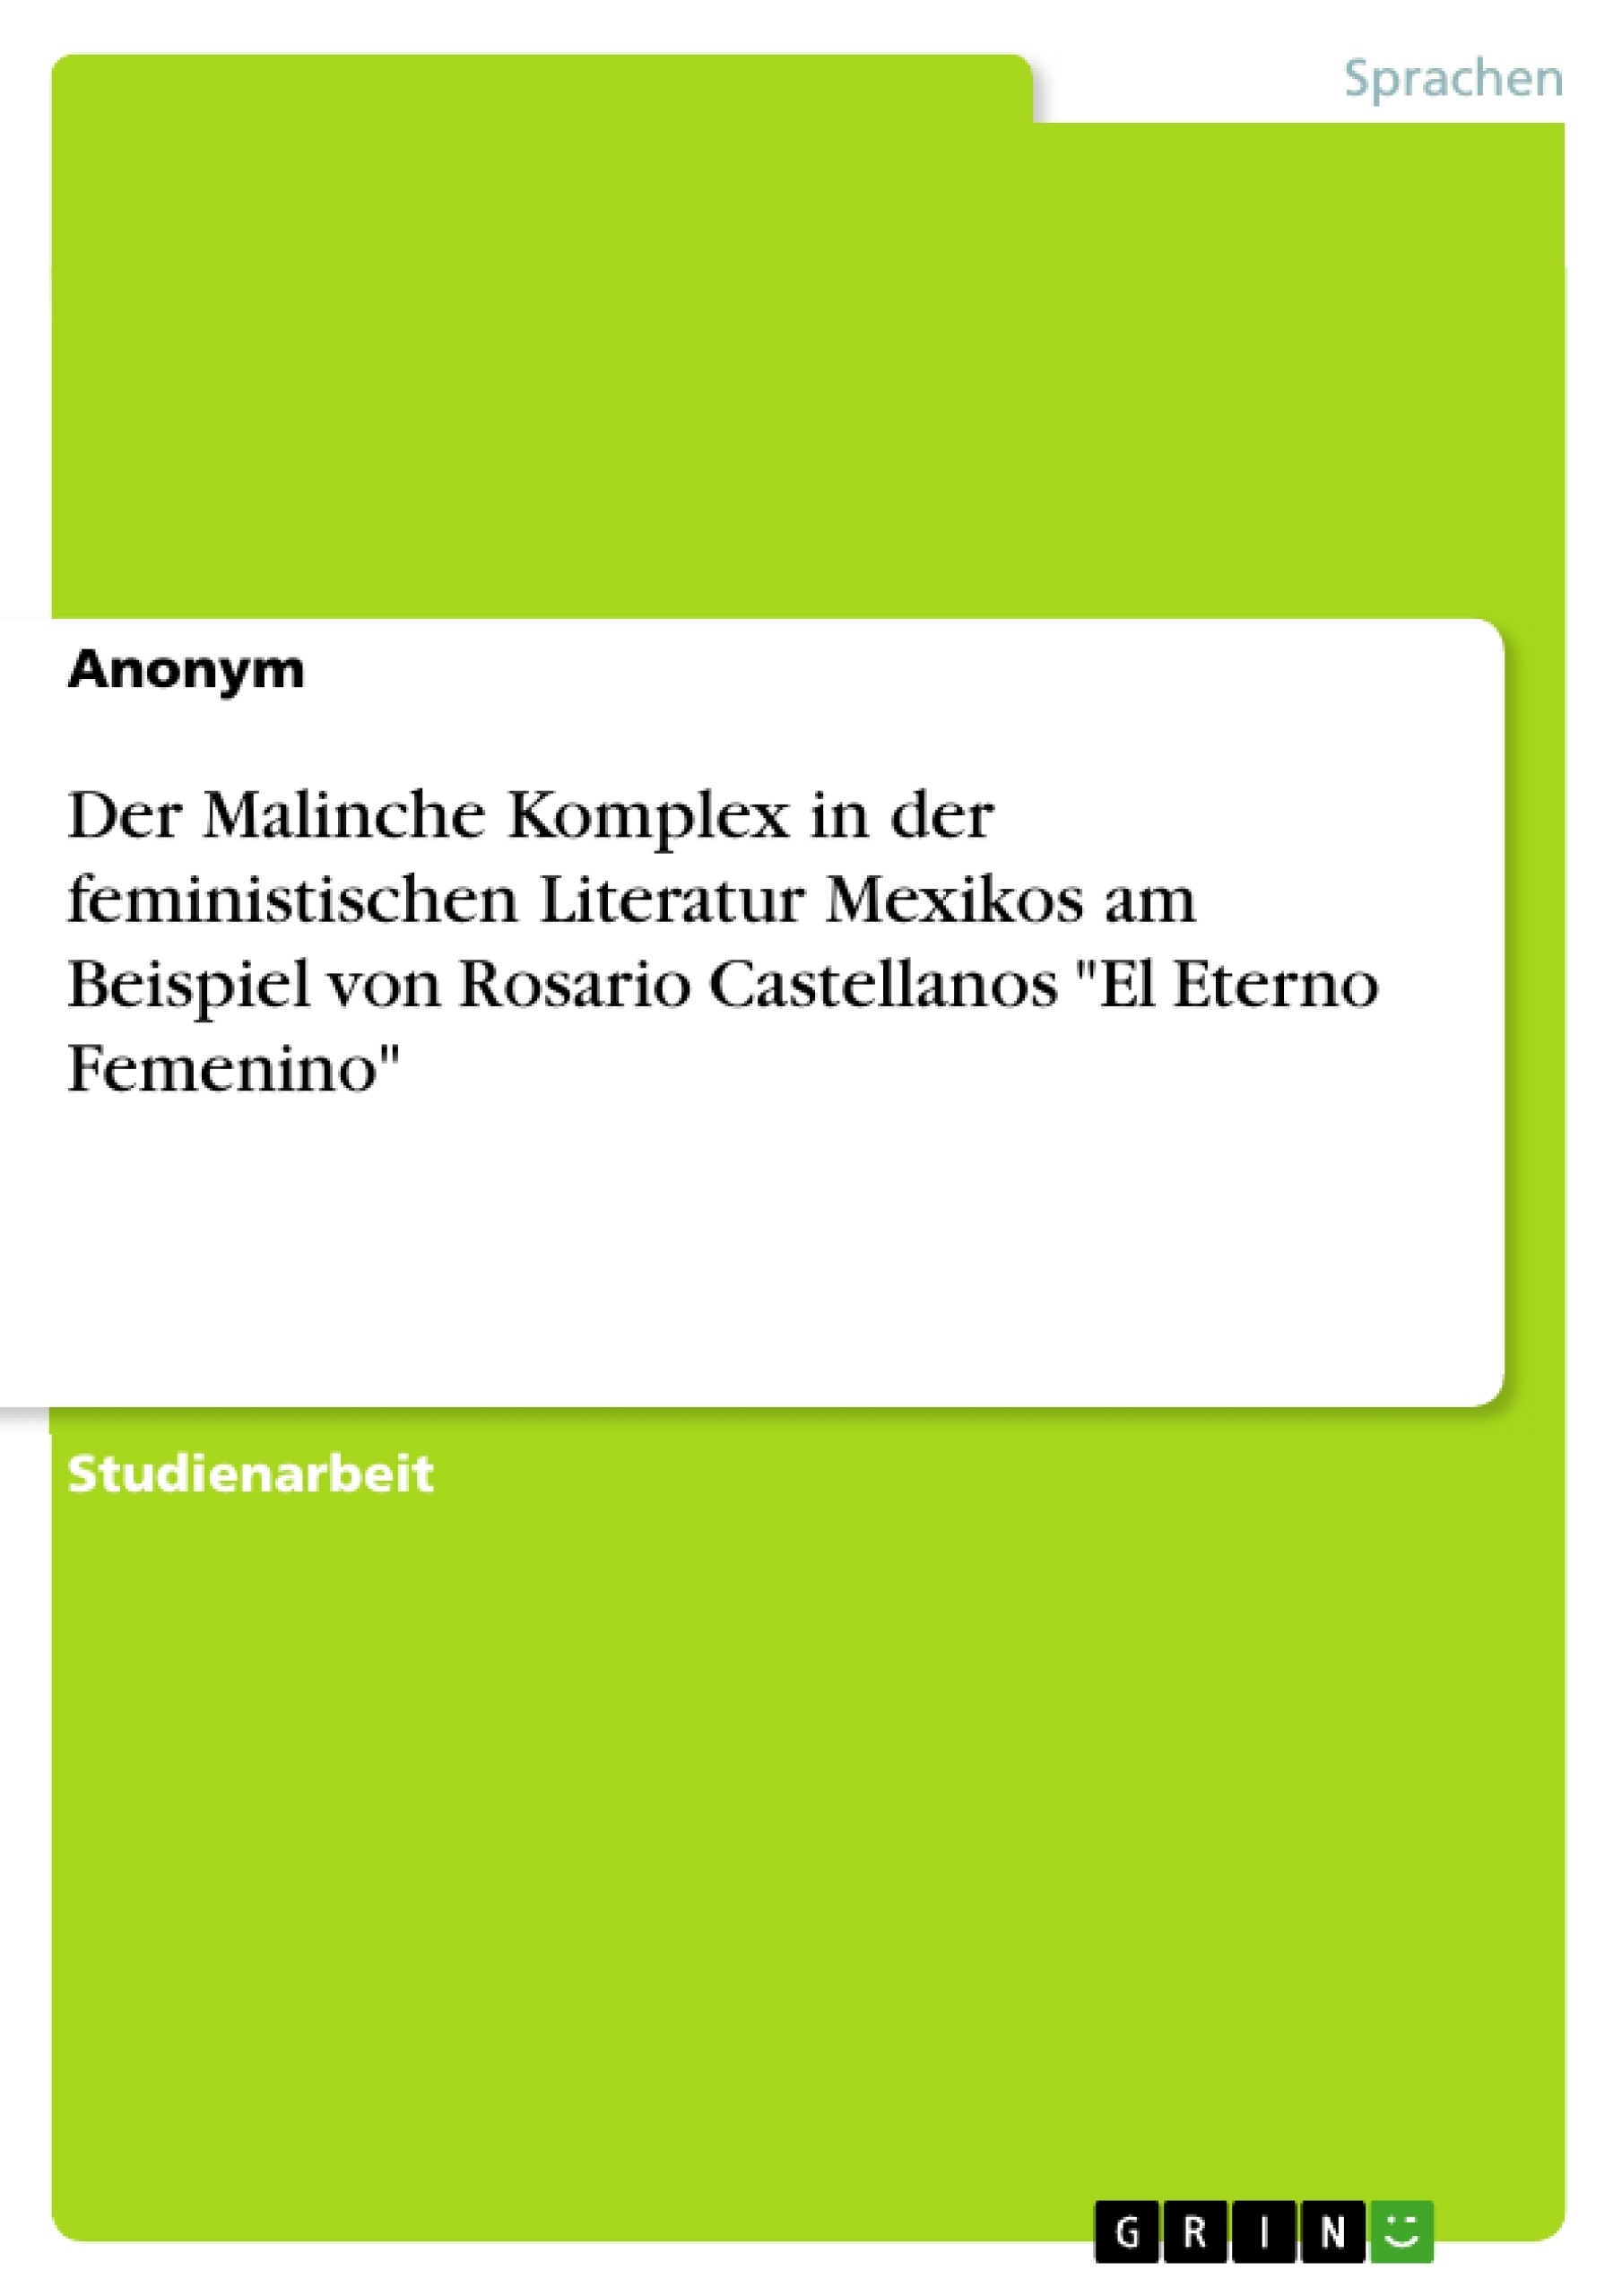 Titre: Der Malinche Komplex in der feministischen Literatur Mexikos am Beispiel von Rosario Castellanos "El Eterno Femenino"